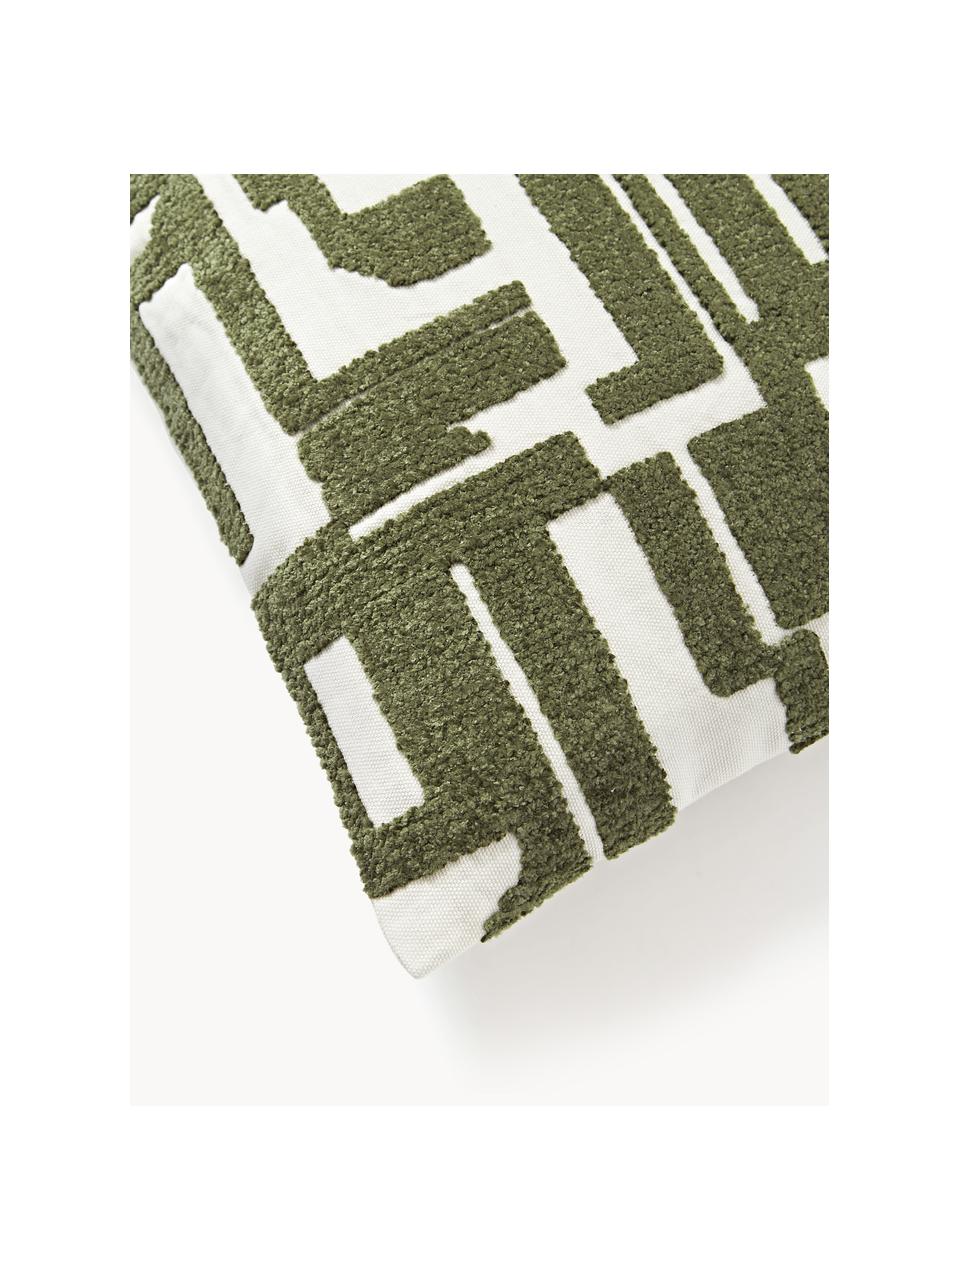 Poszewka na poduszkę Fran, 100% bawełna, Oliwkowy zielony, złamana biel, S 45 x D 45 cm